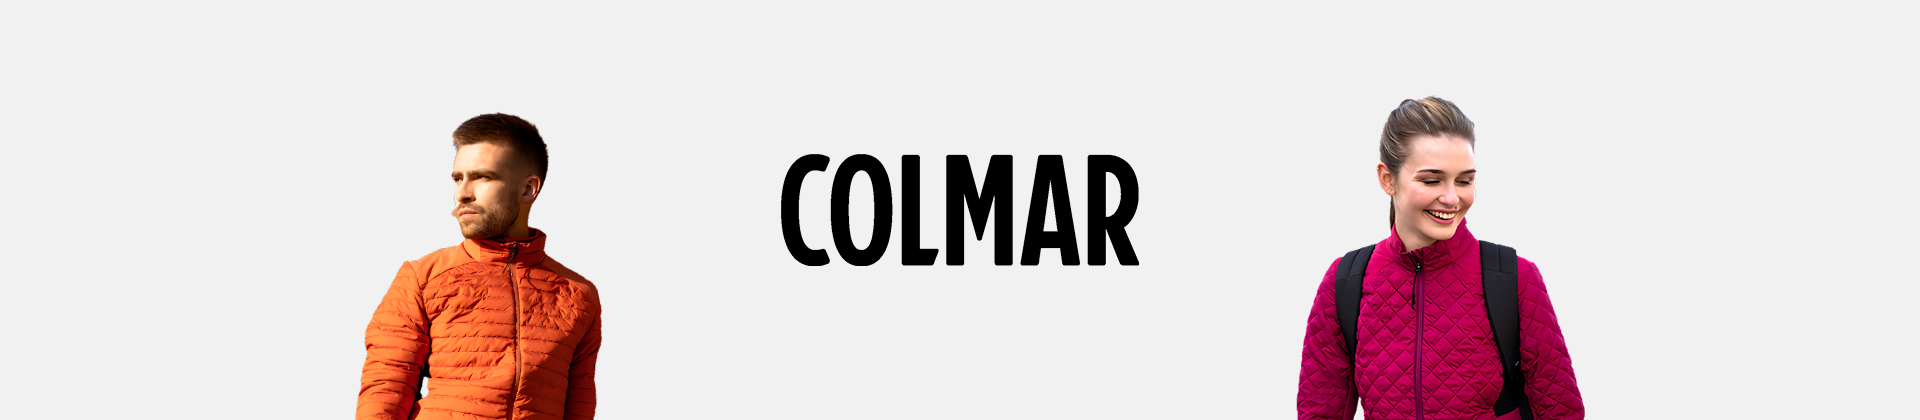 Colmar's shoes online - sneaker